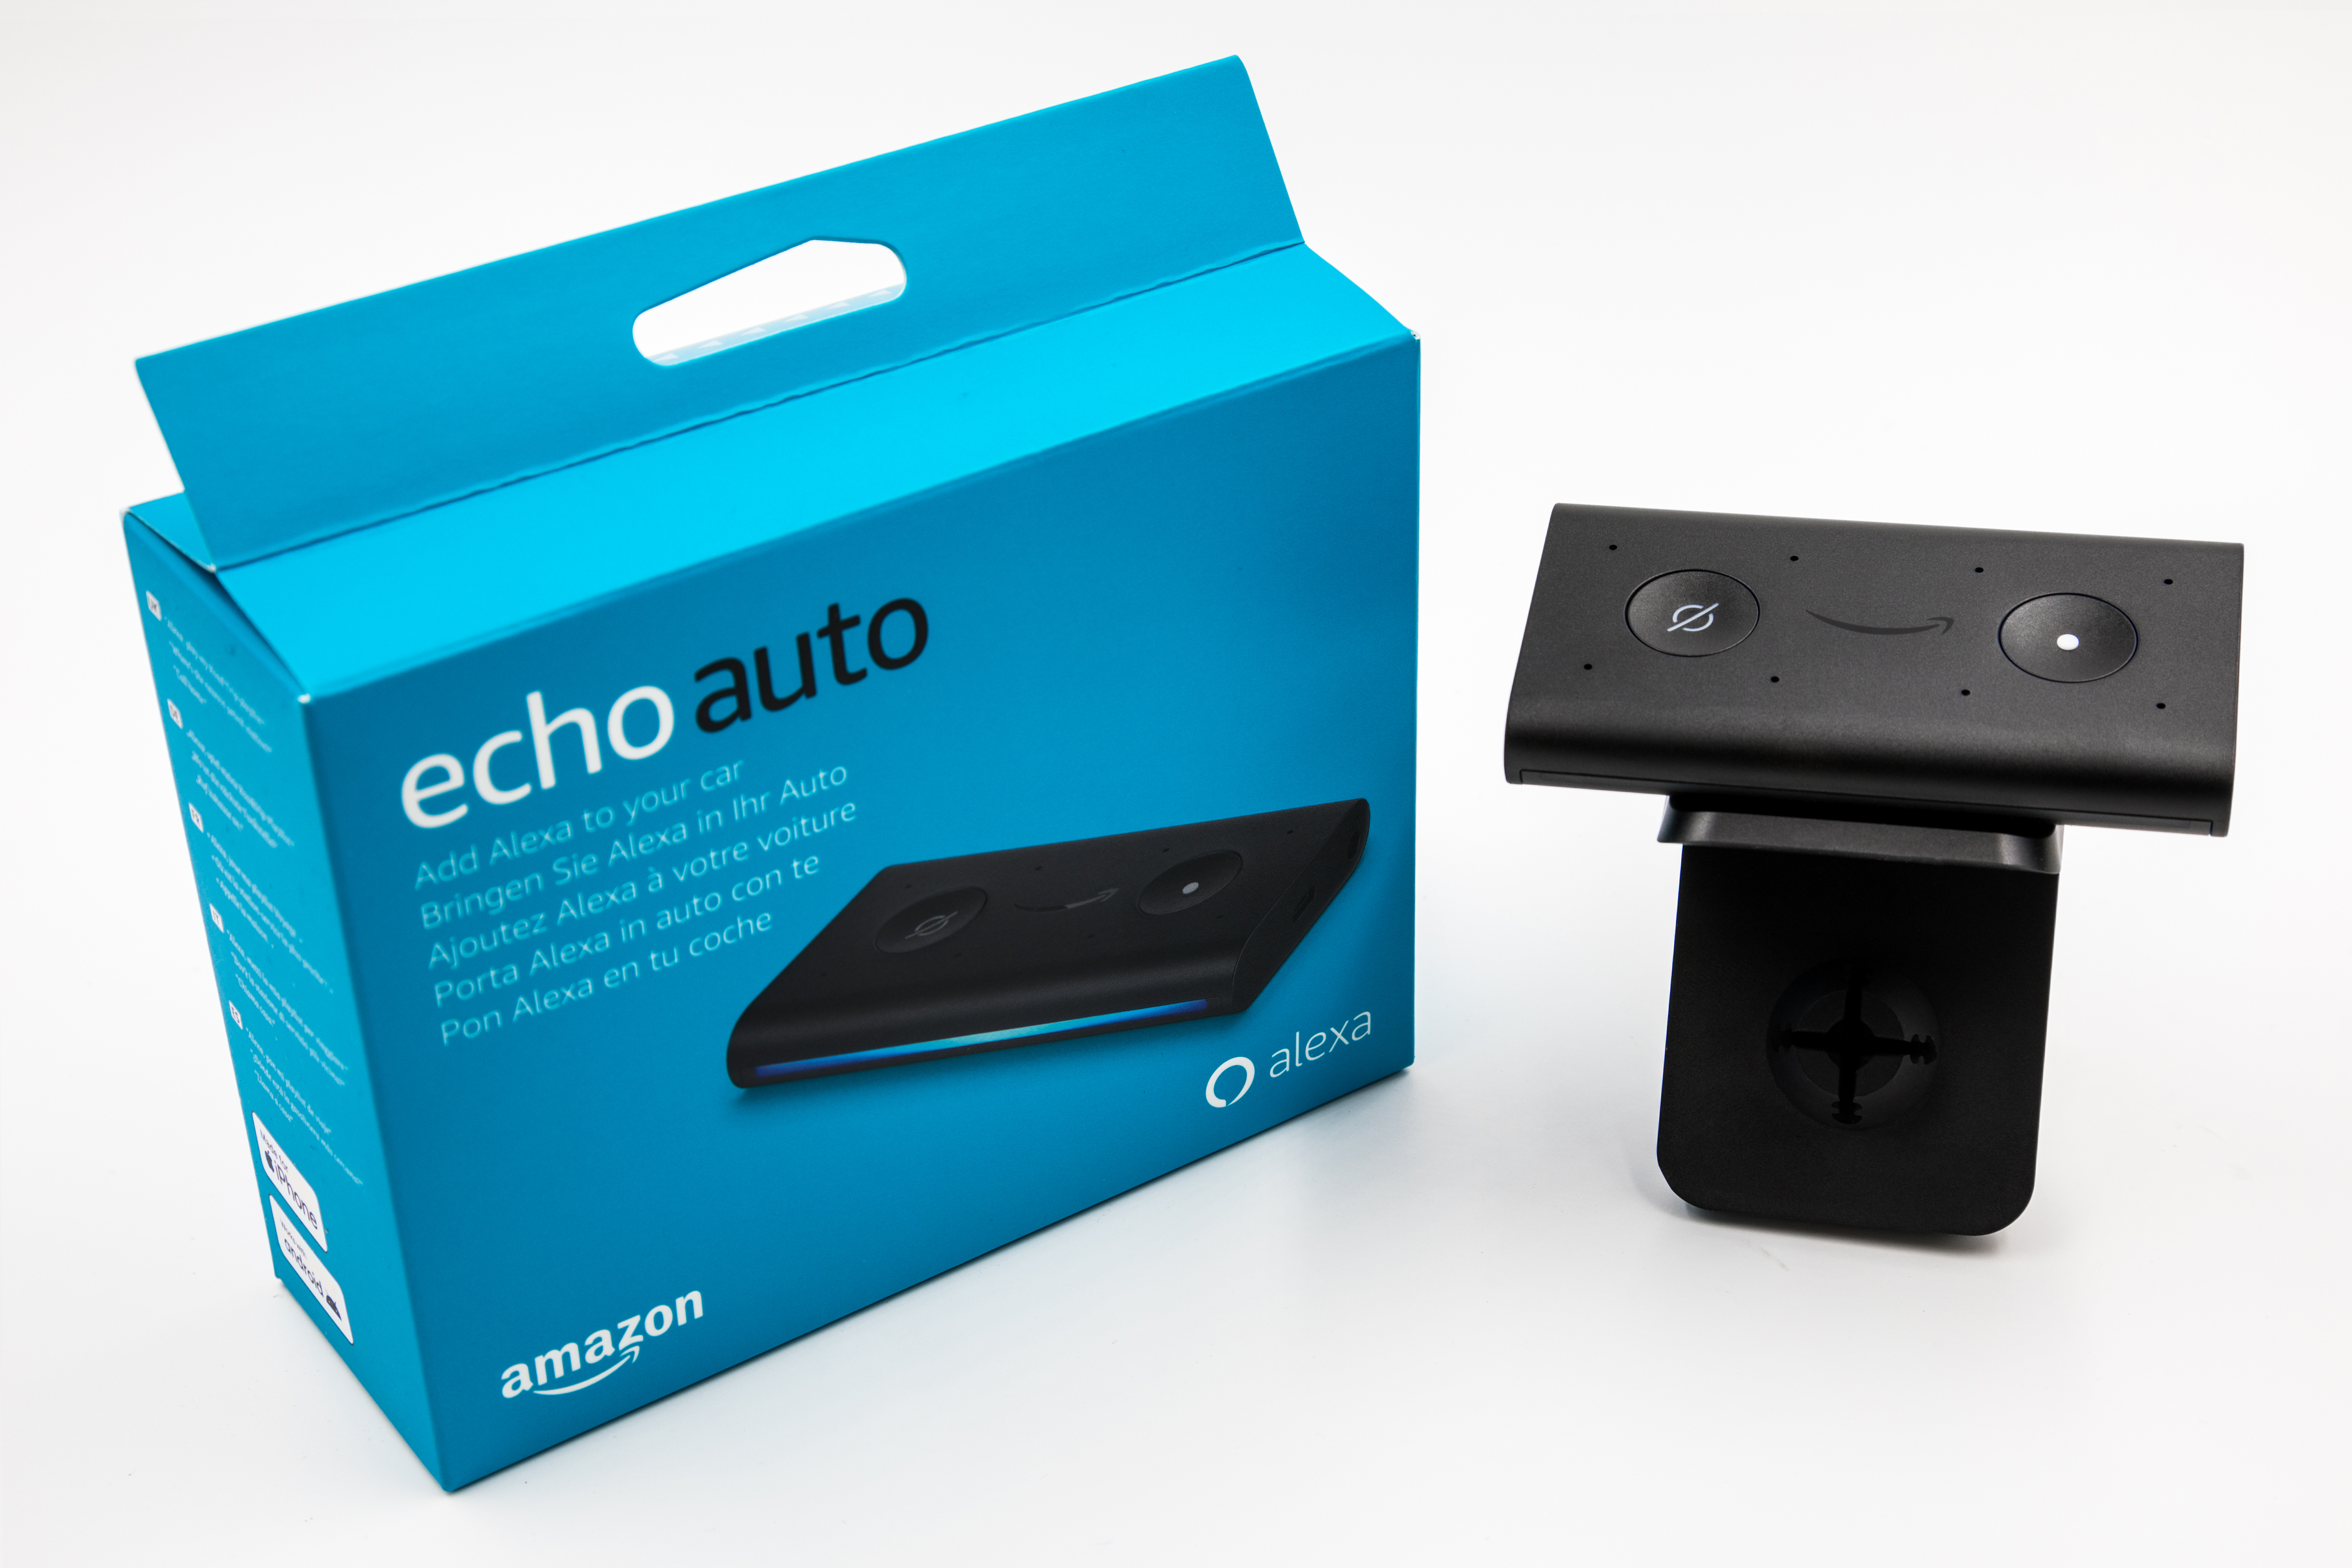 lancia Echo Auto in Italia: solo 59,99€ per avere Alexa anche  durante i viaggi. Come funziona